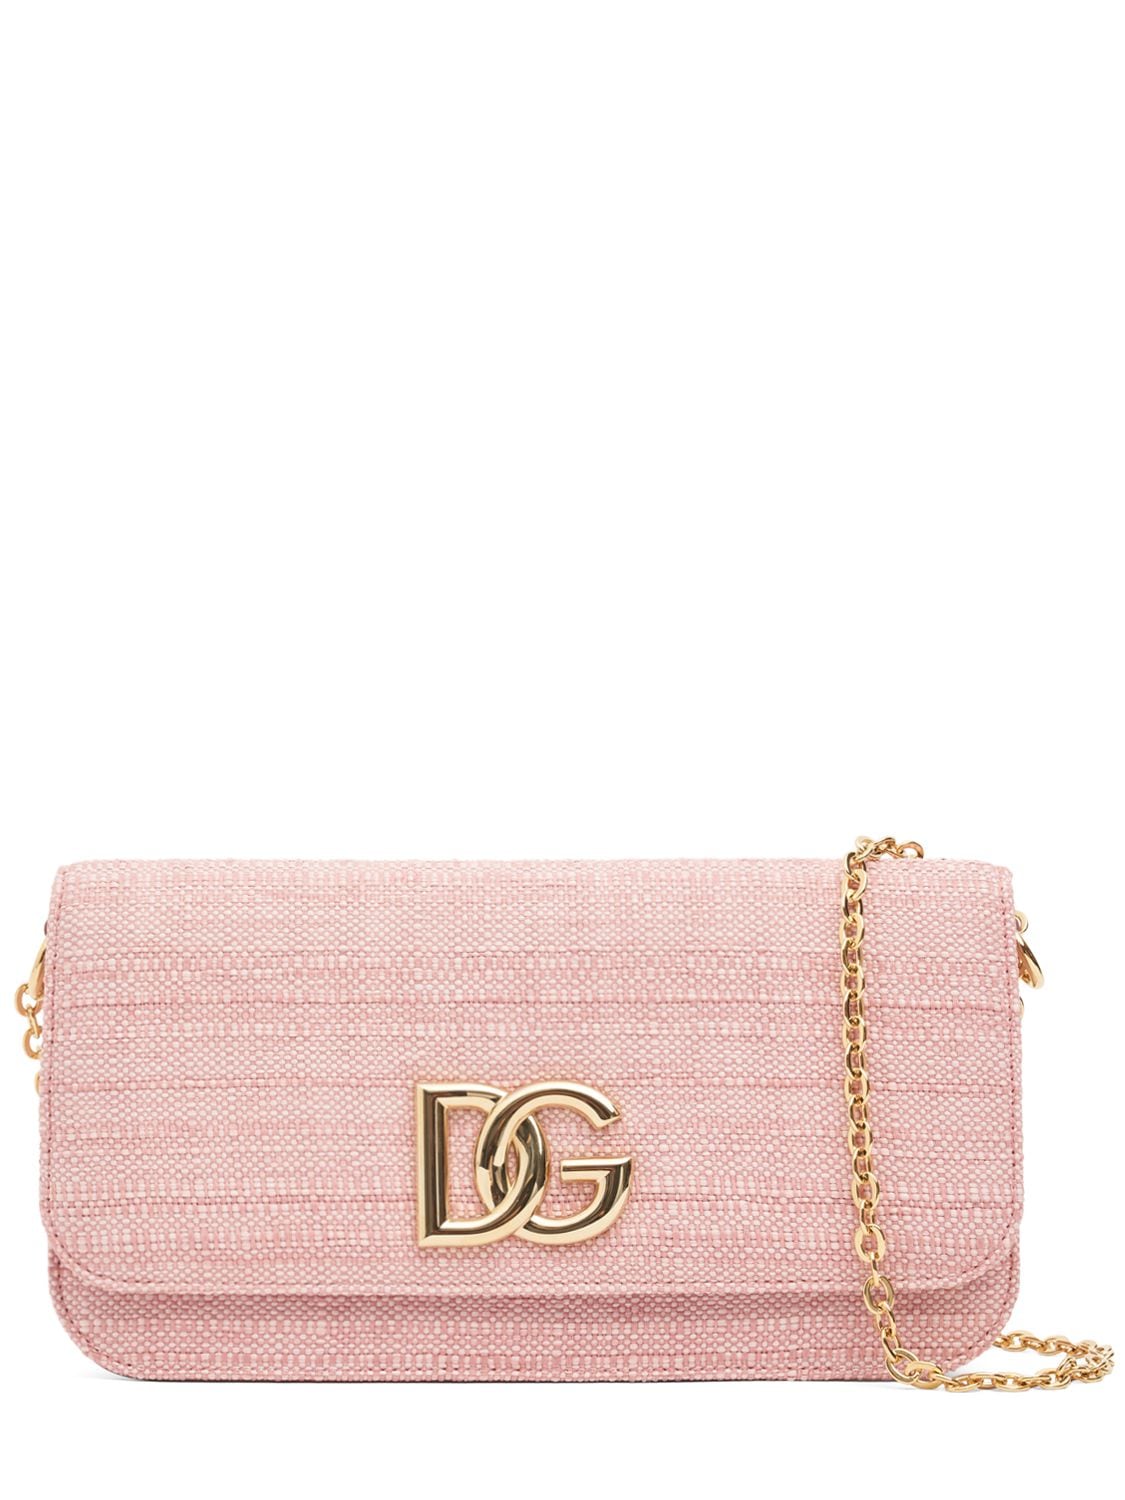 Dolce & Gabbana Raffia Chain Shoulder Bag In Rosa Baby